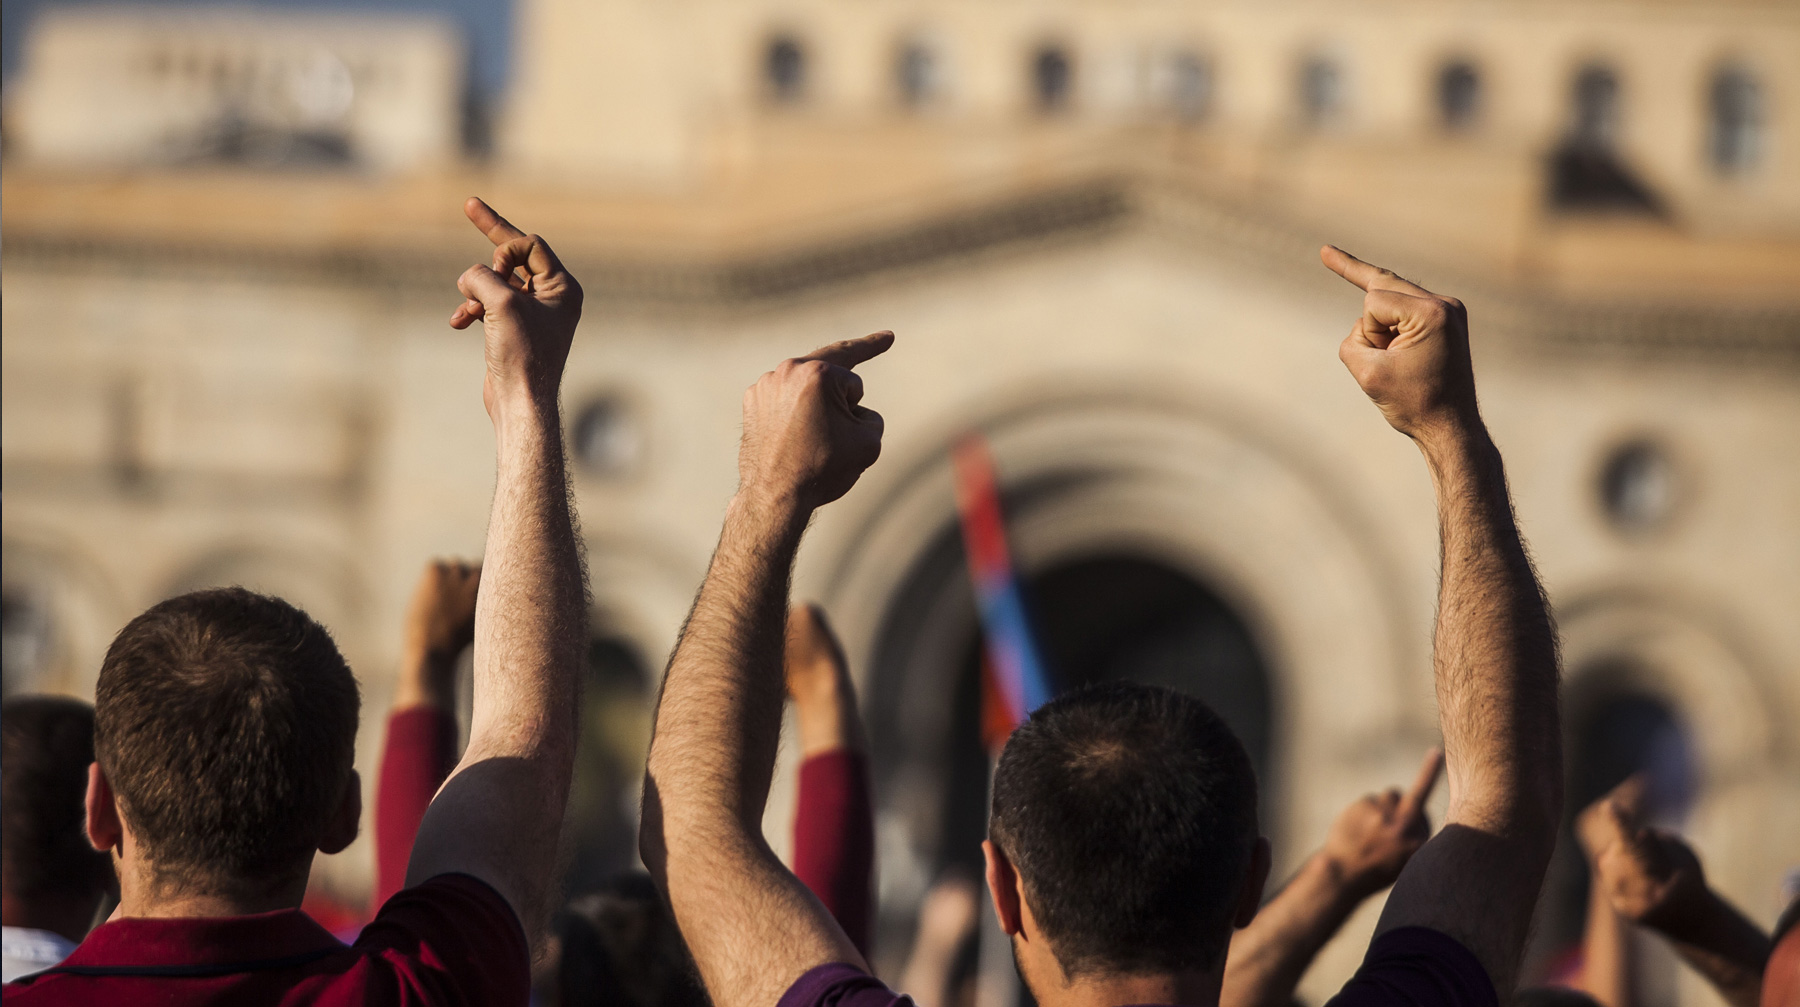 Новая программа развития страны позволит гражданам воспользоваться всеми возможностями для достижения успеха, убежден премьер Протестующие  во время парламентских слушаний, Ереван, Армения, 1 мая 2018 г.